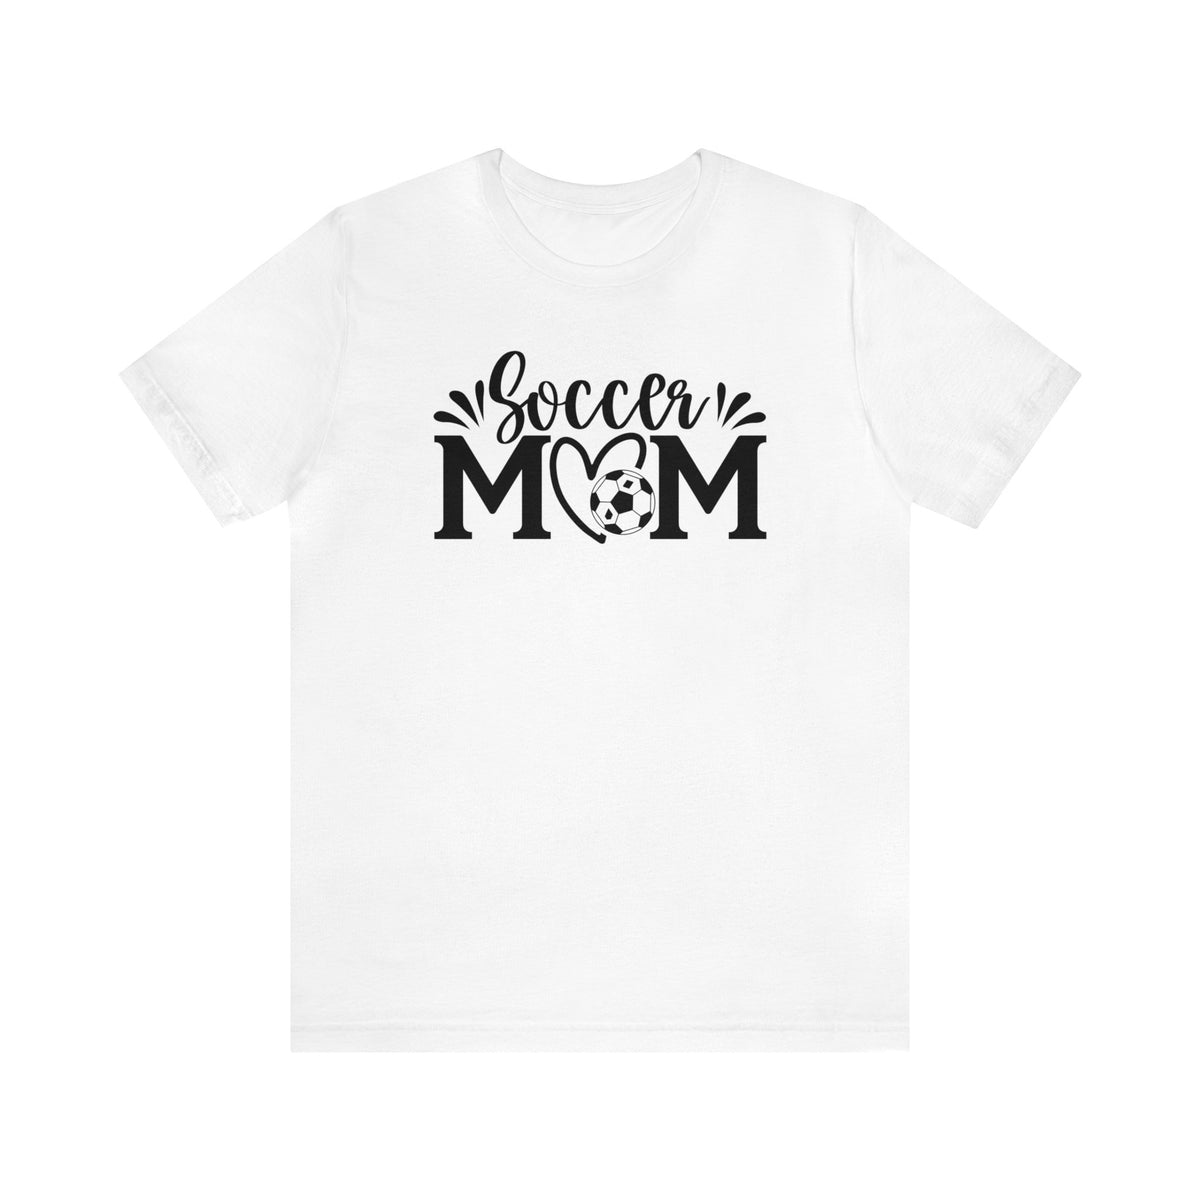 Soccer Mom Shirt | Soccer Mom Gift